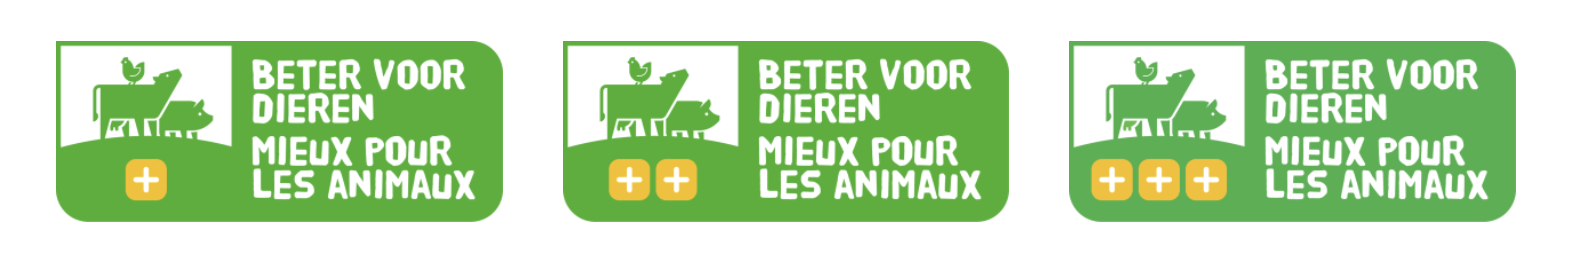 Nuova etichetta belga sul benessere degli animali – Notizie